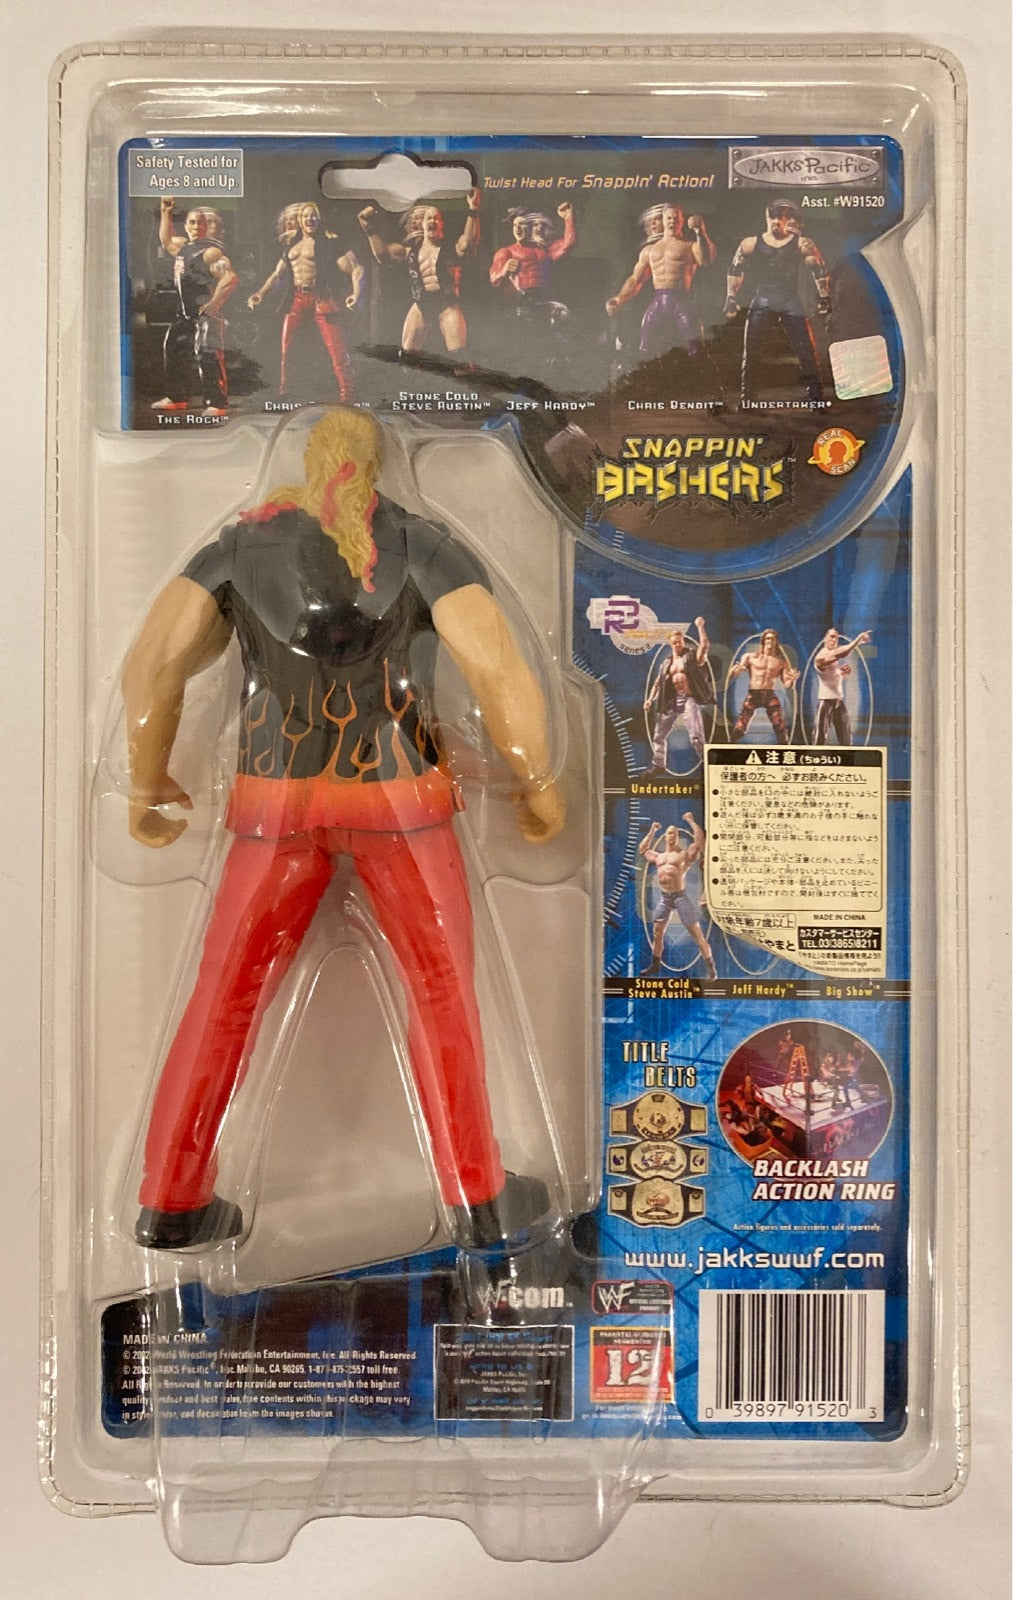 2002 WWF Jakks Pacific Snappin' Bashers Chris Jericho